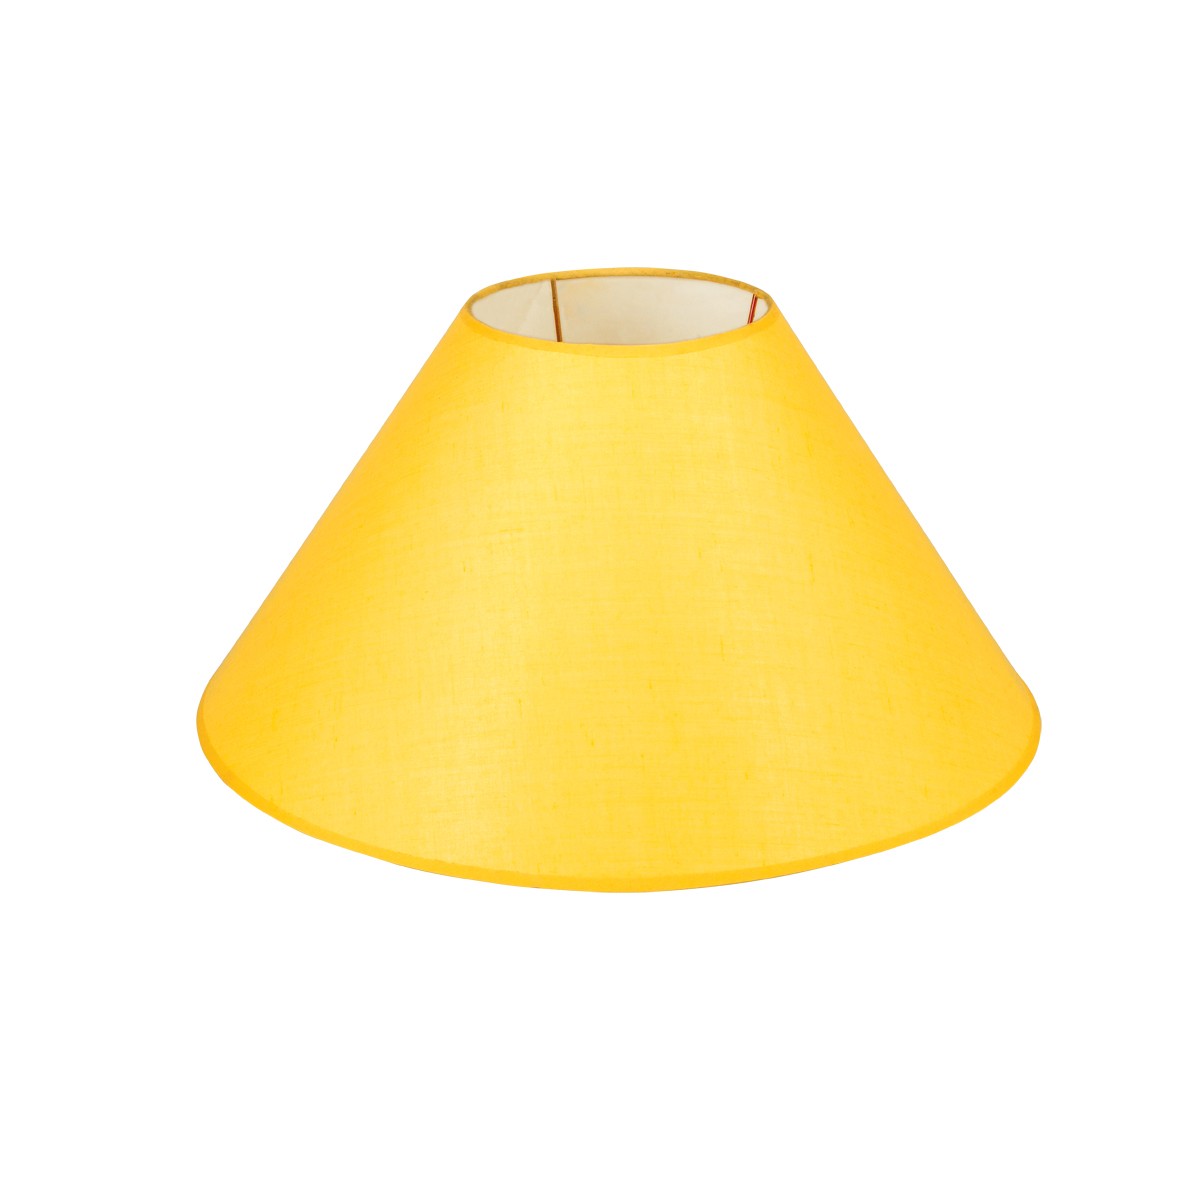 Καπέλο Μονόχρωμο Στρογγυλό Φ40cm Κάτω Πλευρά- Σε  Κίτρινο Χρώμα        VK/E27/E14/D40/Y